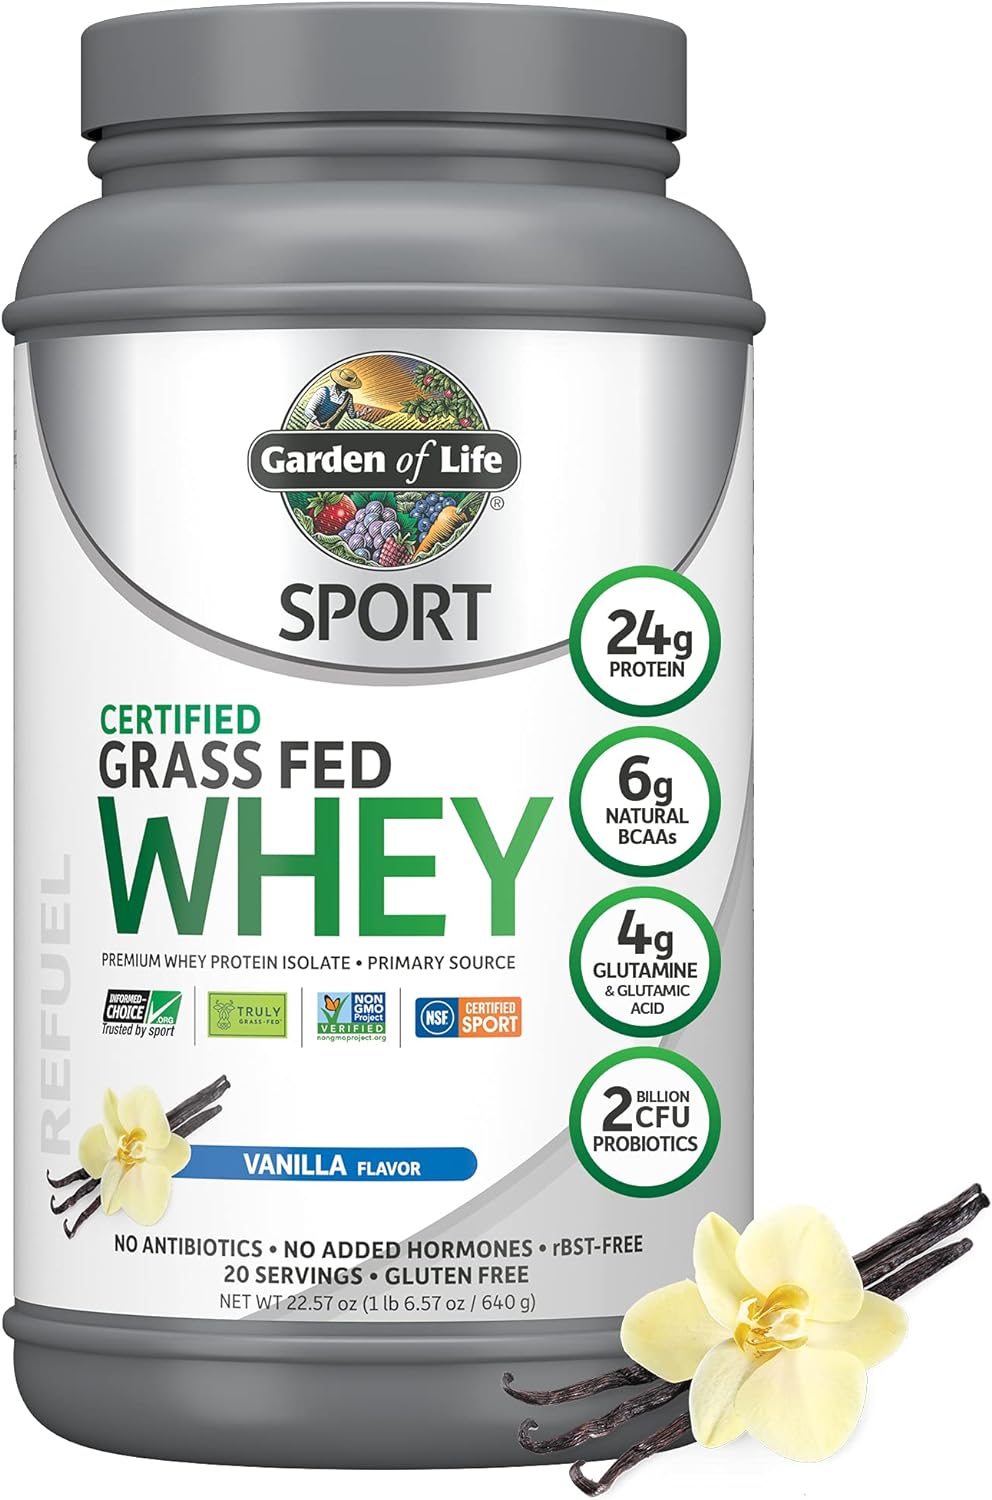 Garden of Life SPORT Whey Protein Powder Vanilla., Premium Grass Fed W